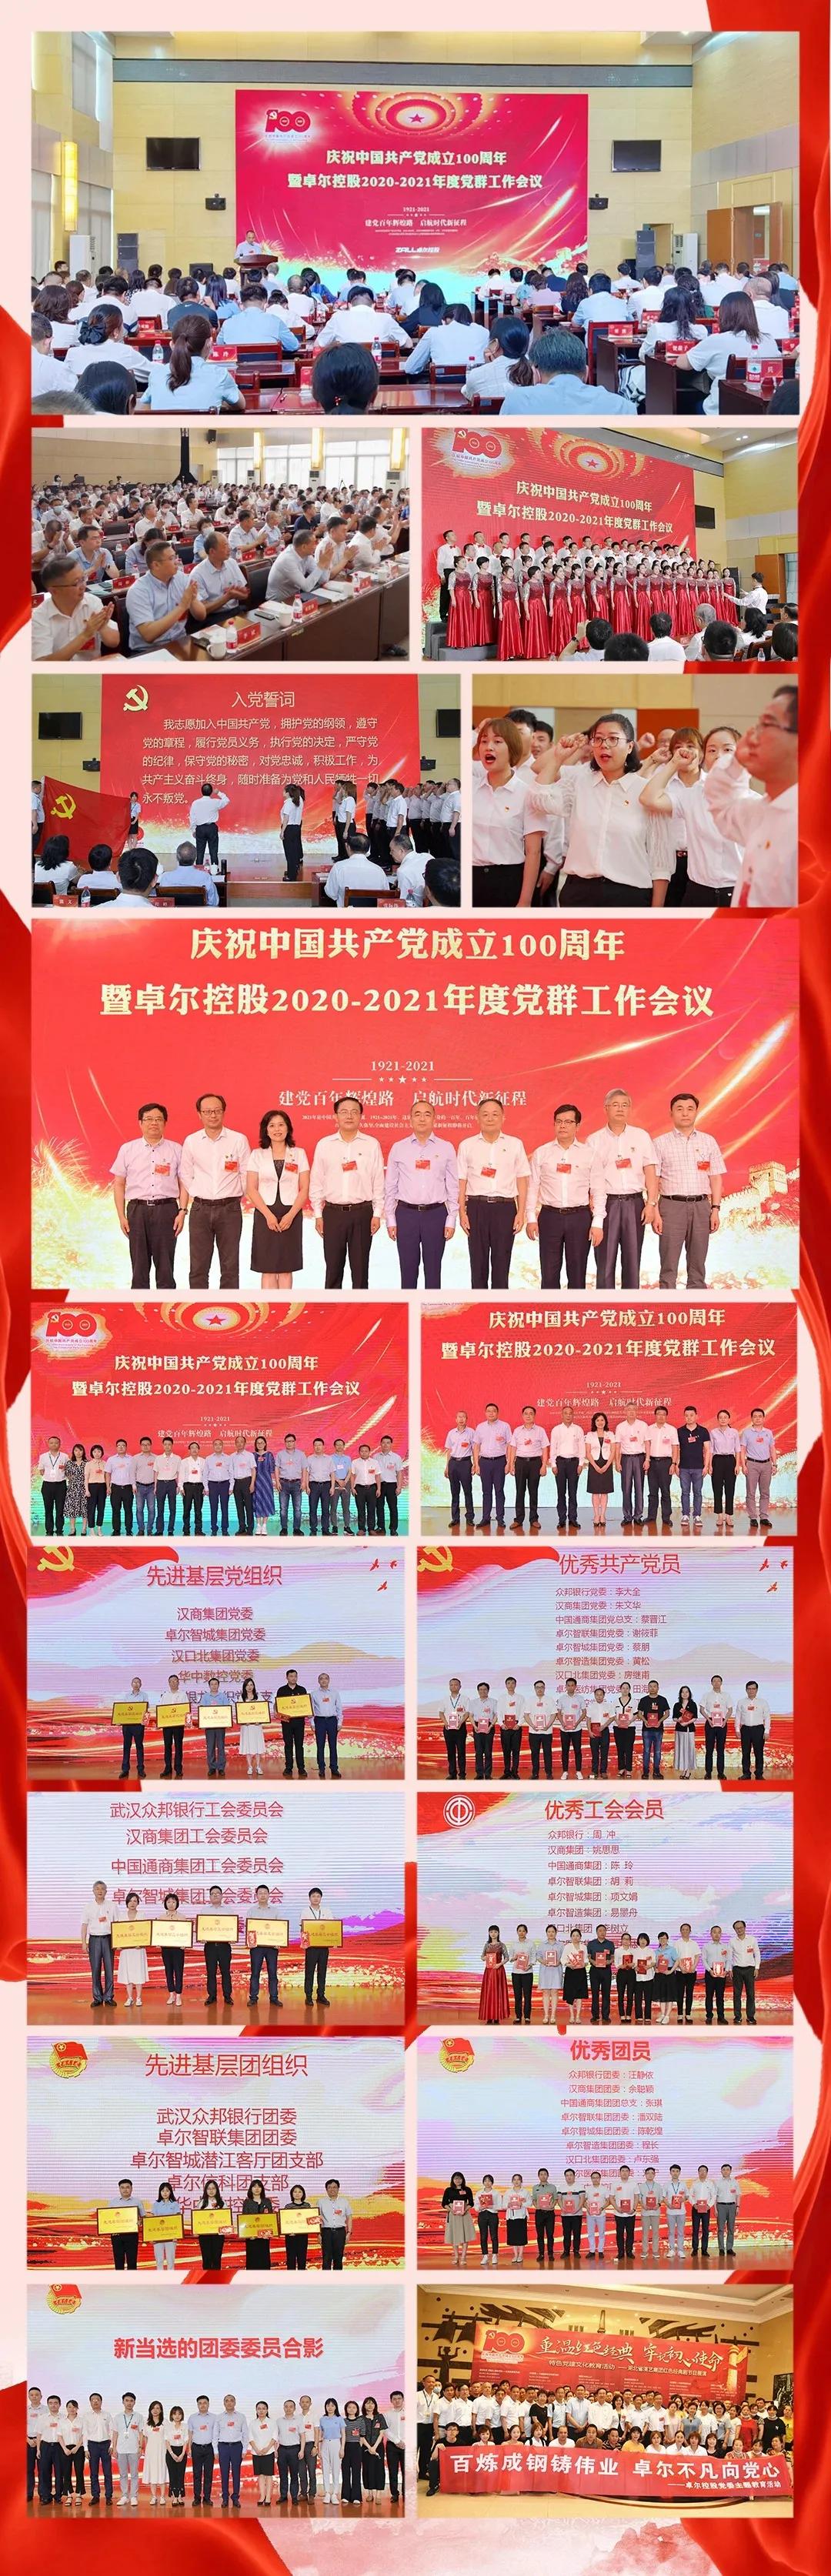 卓尔召开庆祝中国共产党成立100周年暨卓尔控股年度党群工作会议